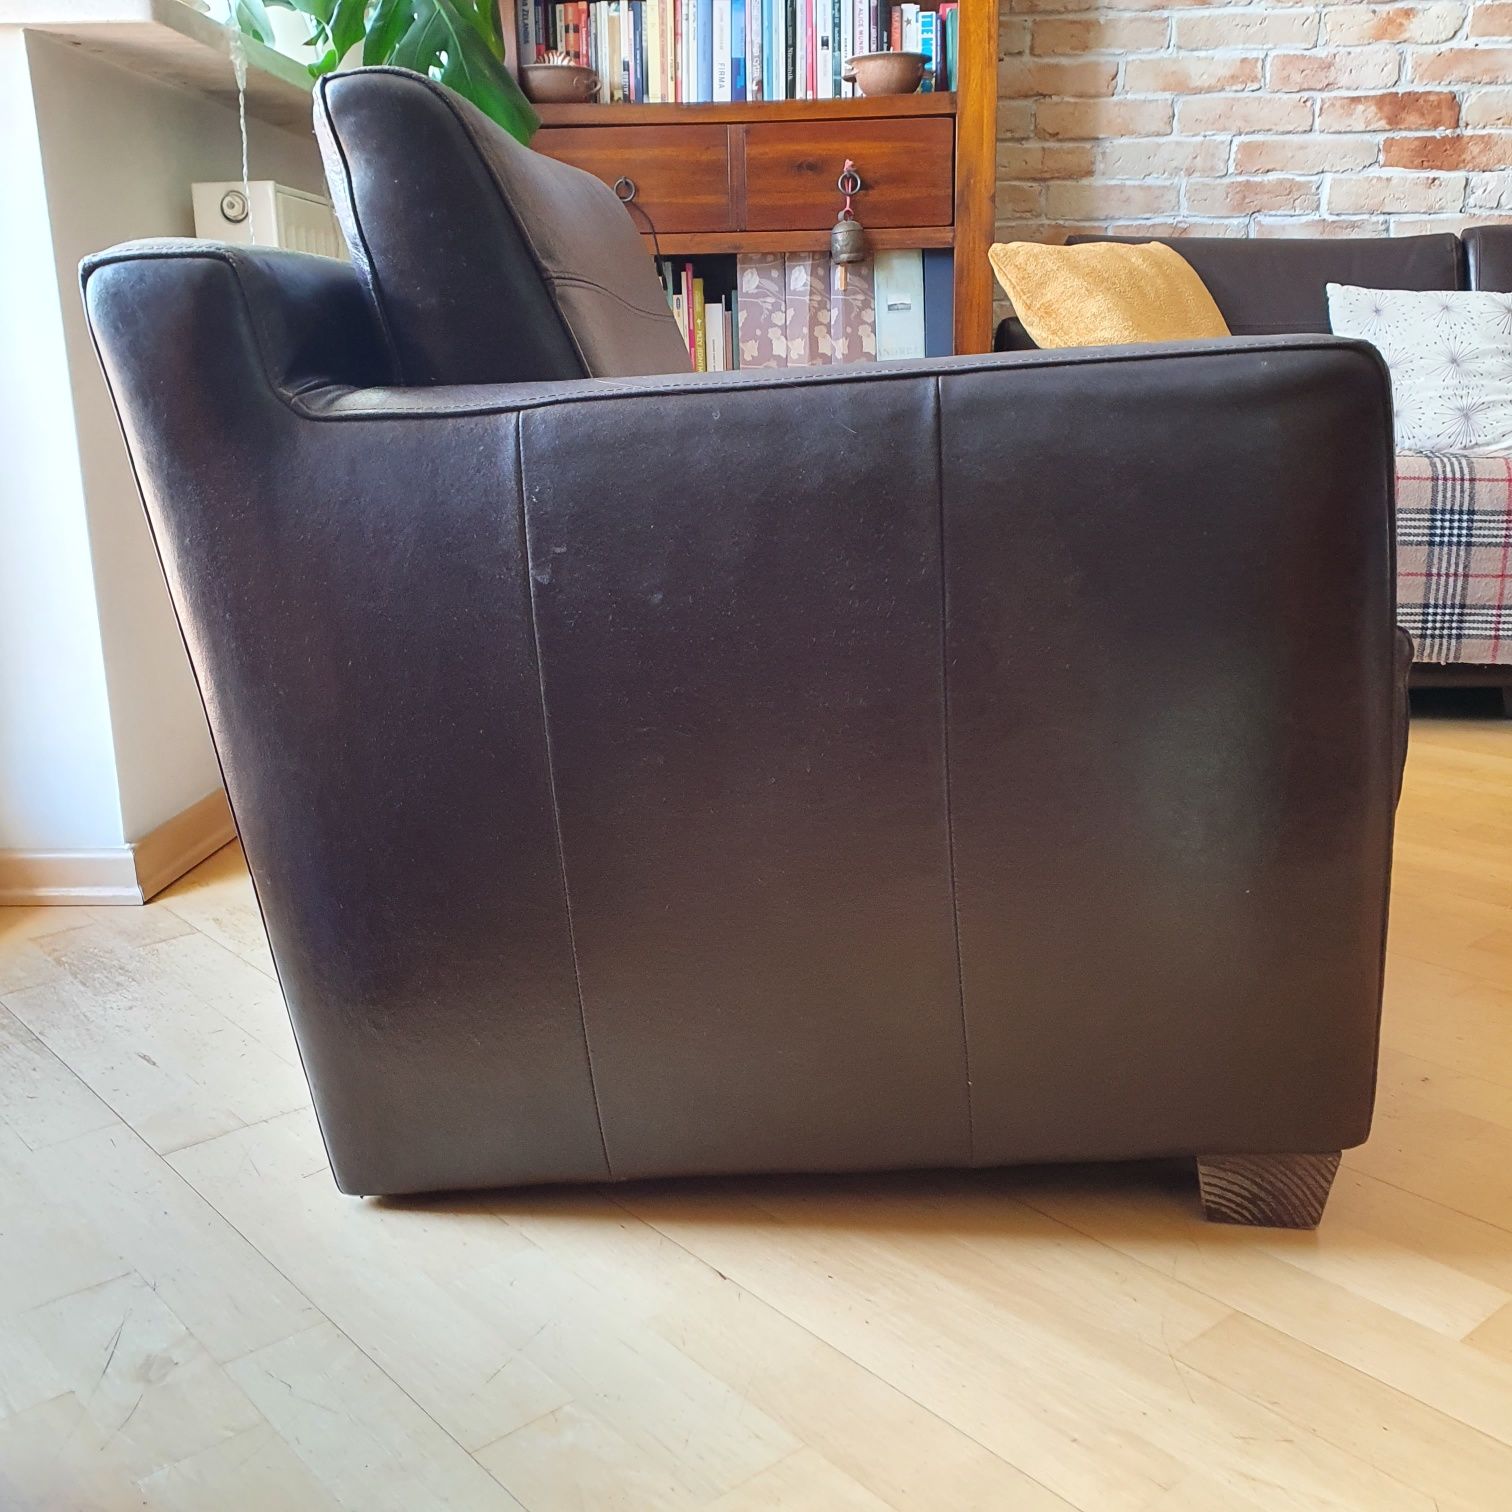 Fotel skorzany, brązowy bardzo wygodny